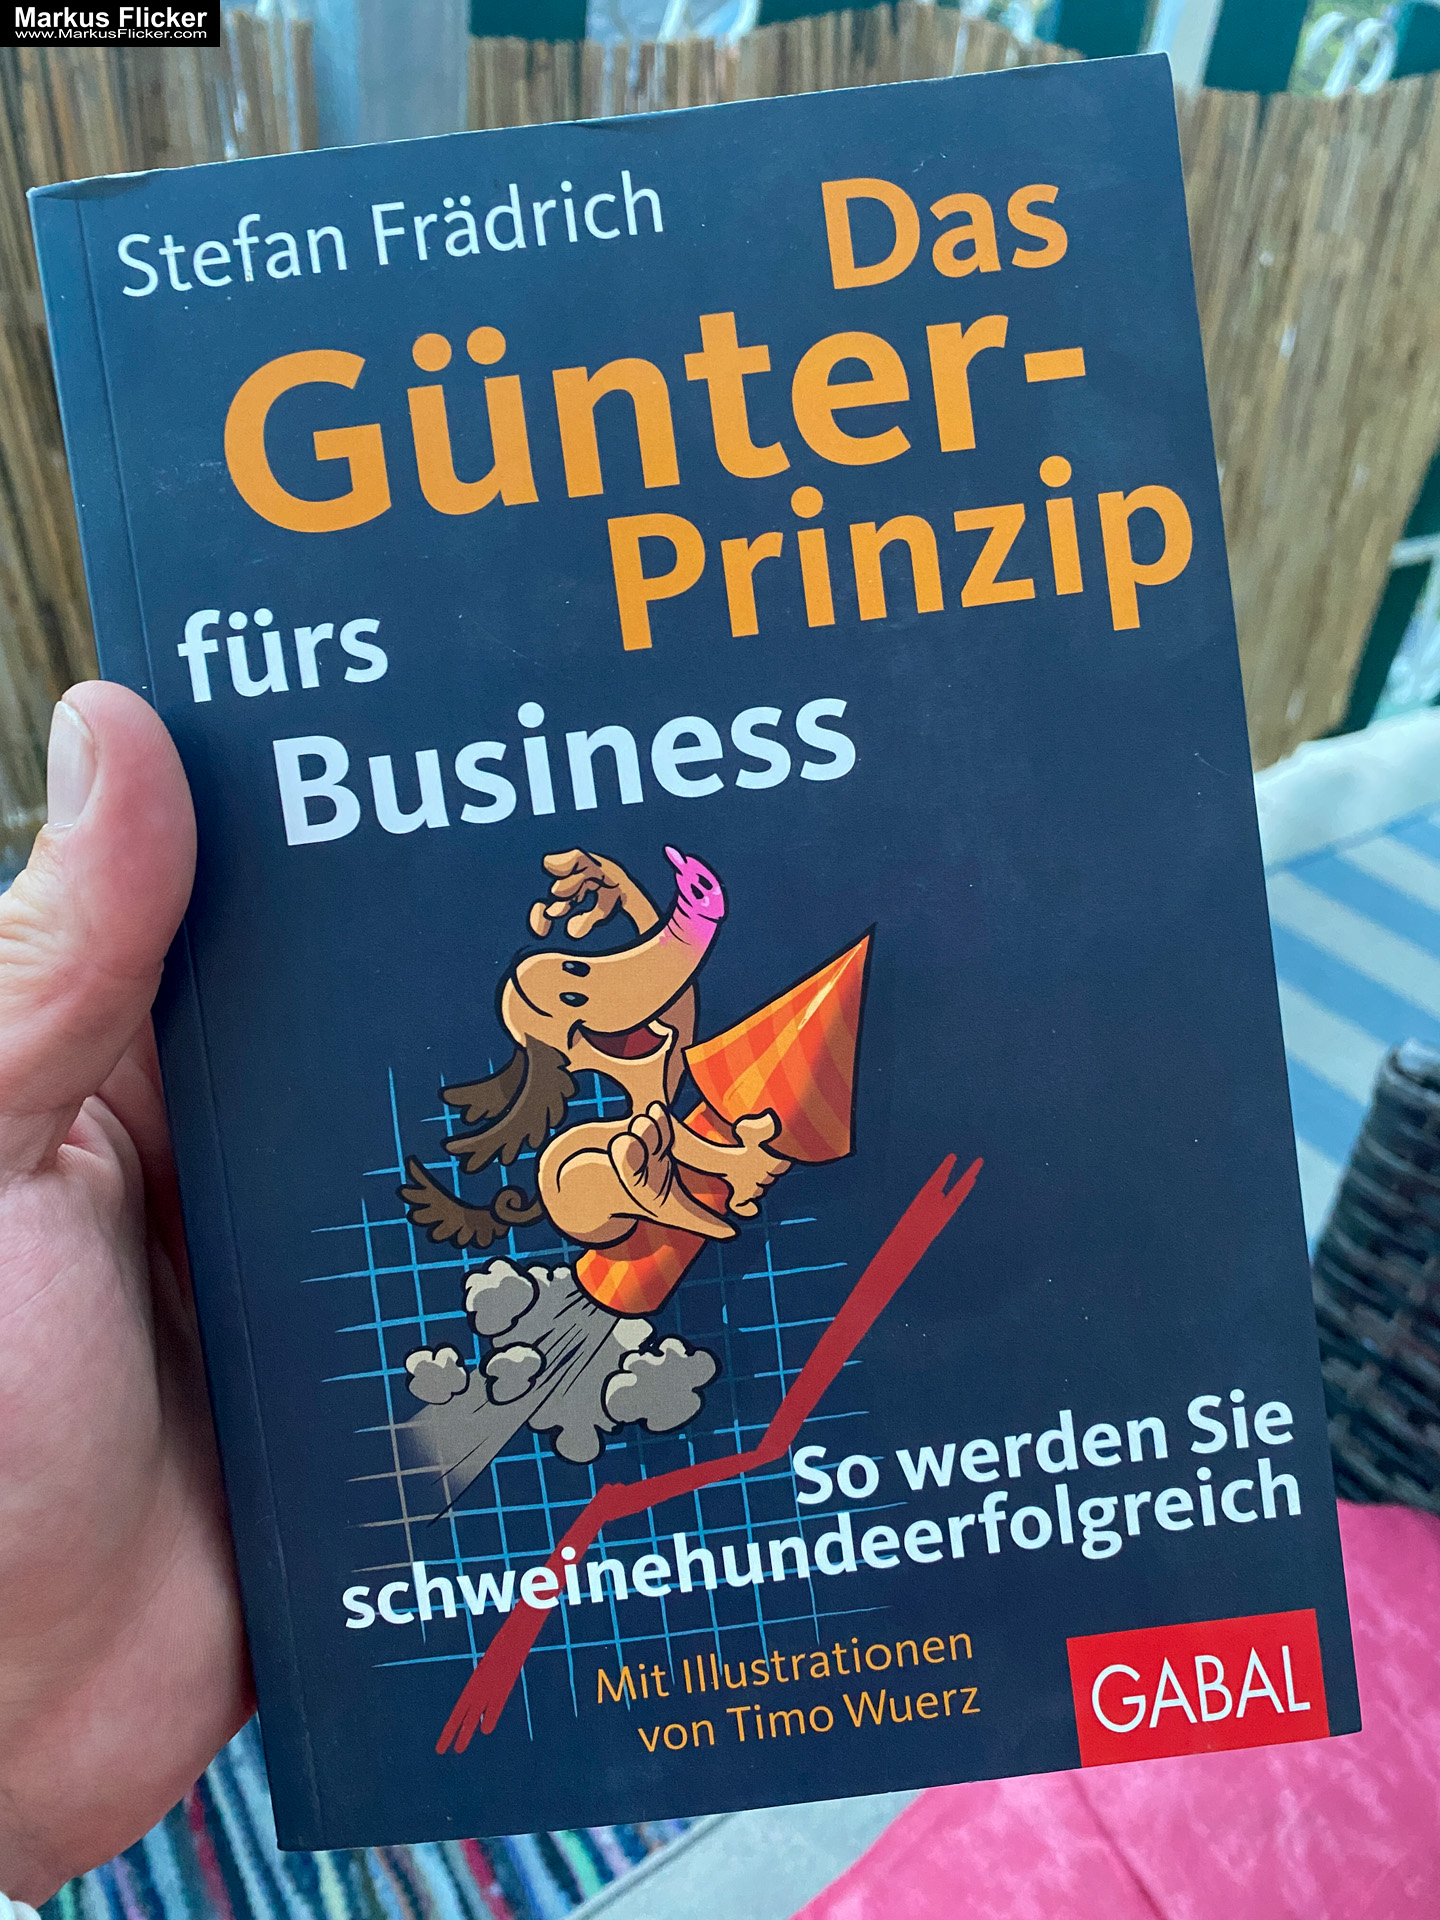 Das Günter-Prinzip fürs Business: So werden Sie schweinehundeerfolgreich (Günter, der innere Schweinehund) von Stefan Frädrich